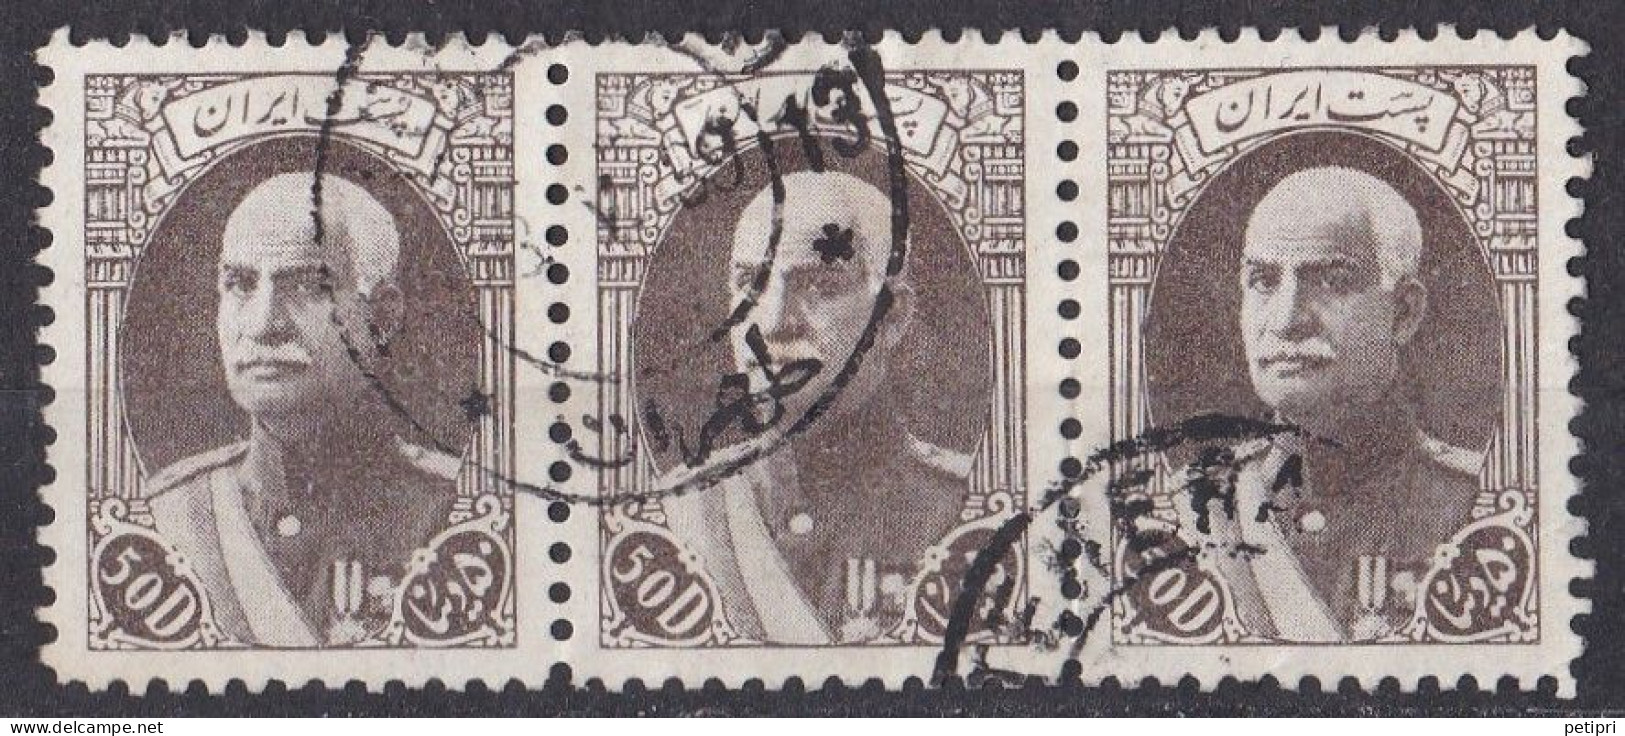 Asie  -  Iran  1938  -  Y&T  N °  641  Bande De 3 Oblitérés - Iran